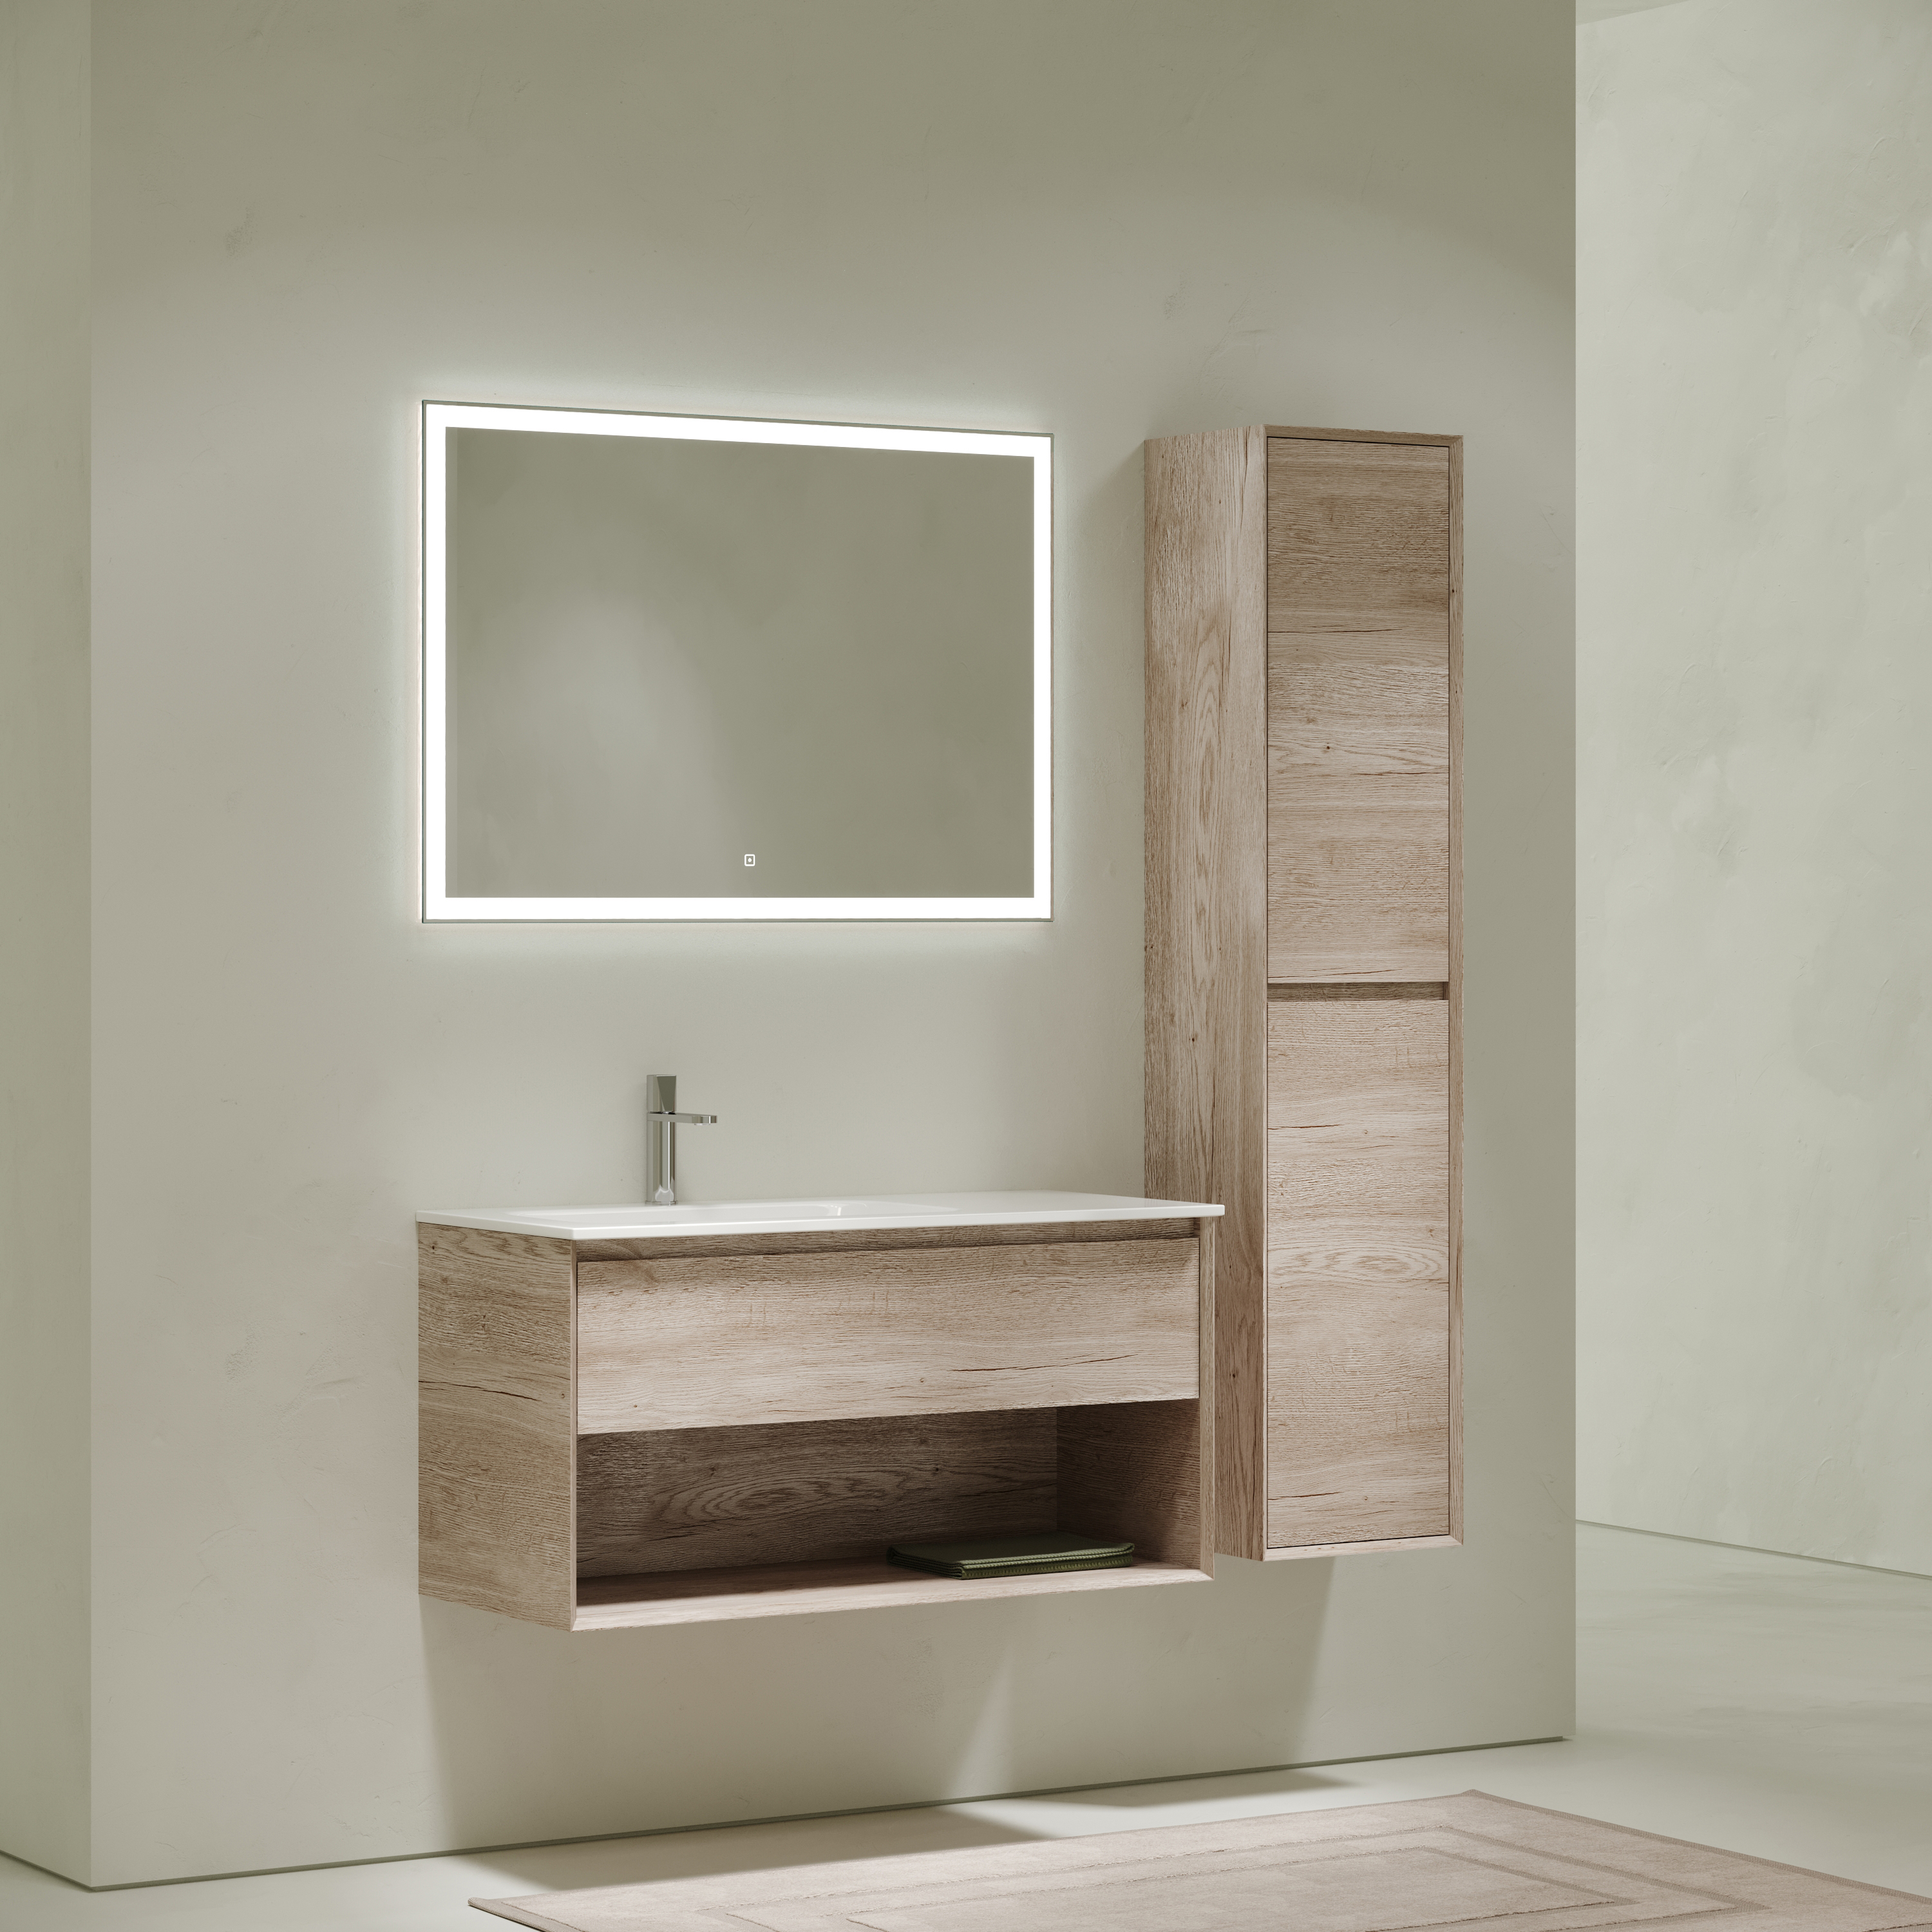 Мебель для ванной комнаты Sancos Marmi 1.0 100 см дуб галифакс натуральный, левая, цвет коричневый MR1.0100LEG - фото 2